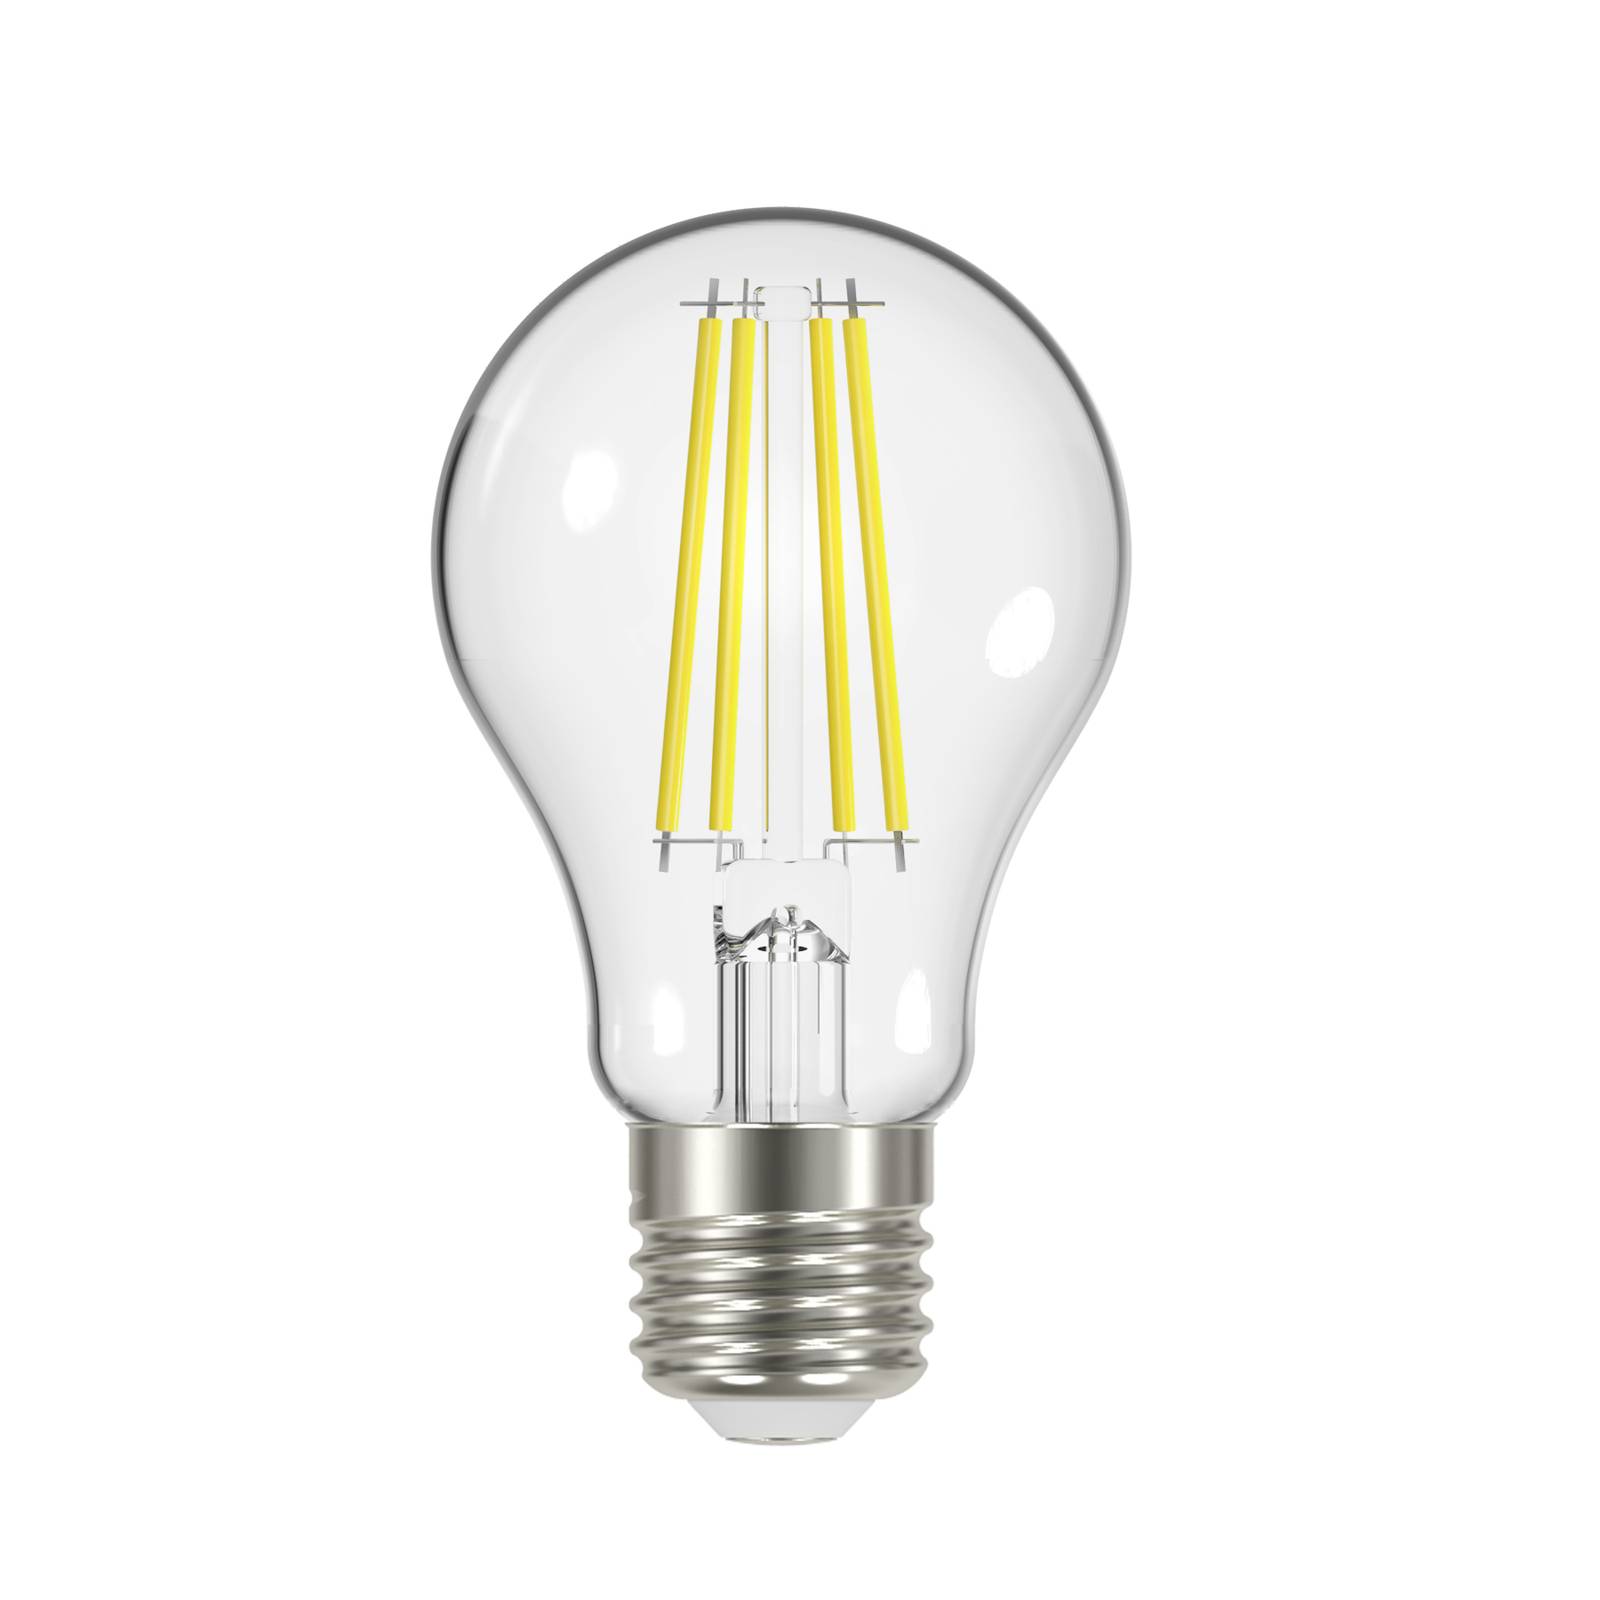 Arcchio Ampoule LED filament, claire, E27, 7,2W, 2700K, 1521 lm